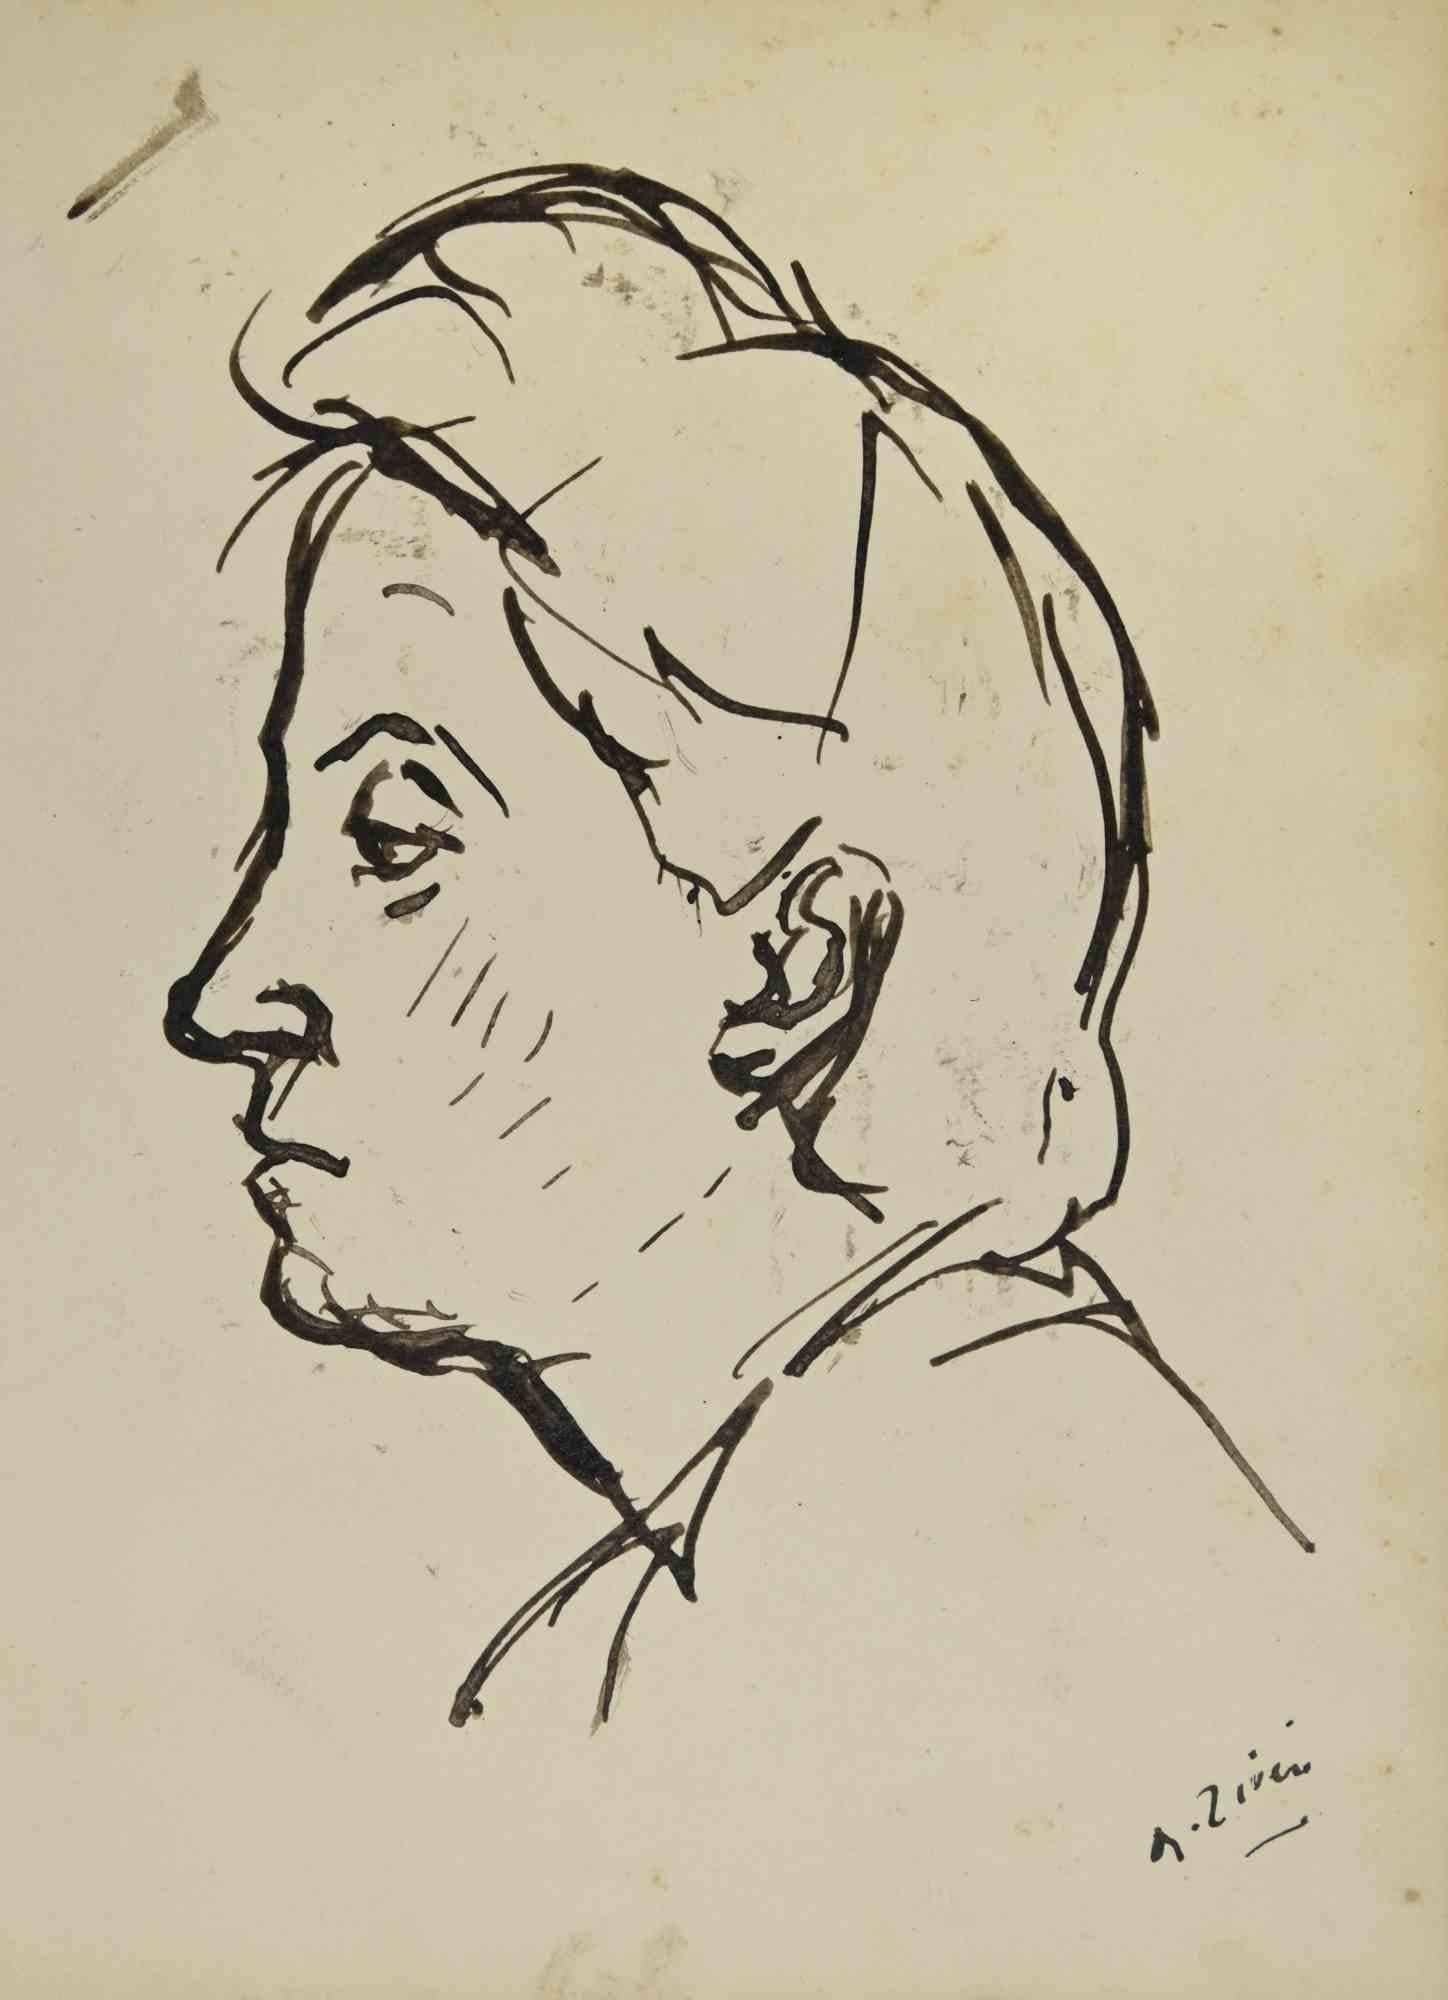 Das Porträt ist eine Zeichnung von Alberto Ziveri aus den 1930er Jahren.

Aquarell auf Papier.

Handsigniert.

In gutem Zustand.

Das Kunstwerk wird durch geschickte Striche meisterhaft dargestellt.

Alberto Ziveri (Rom, 1908 - 1990), der